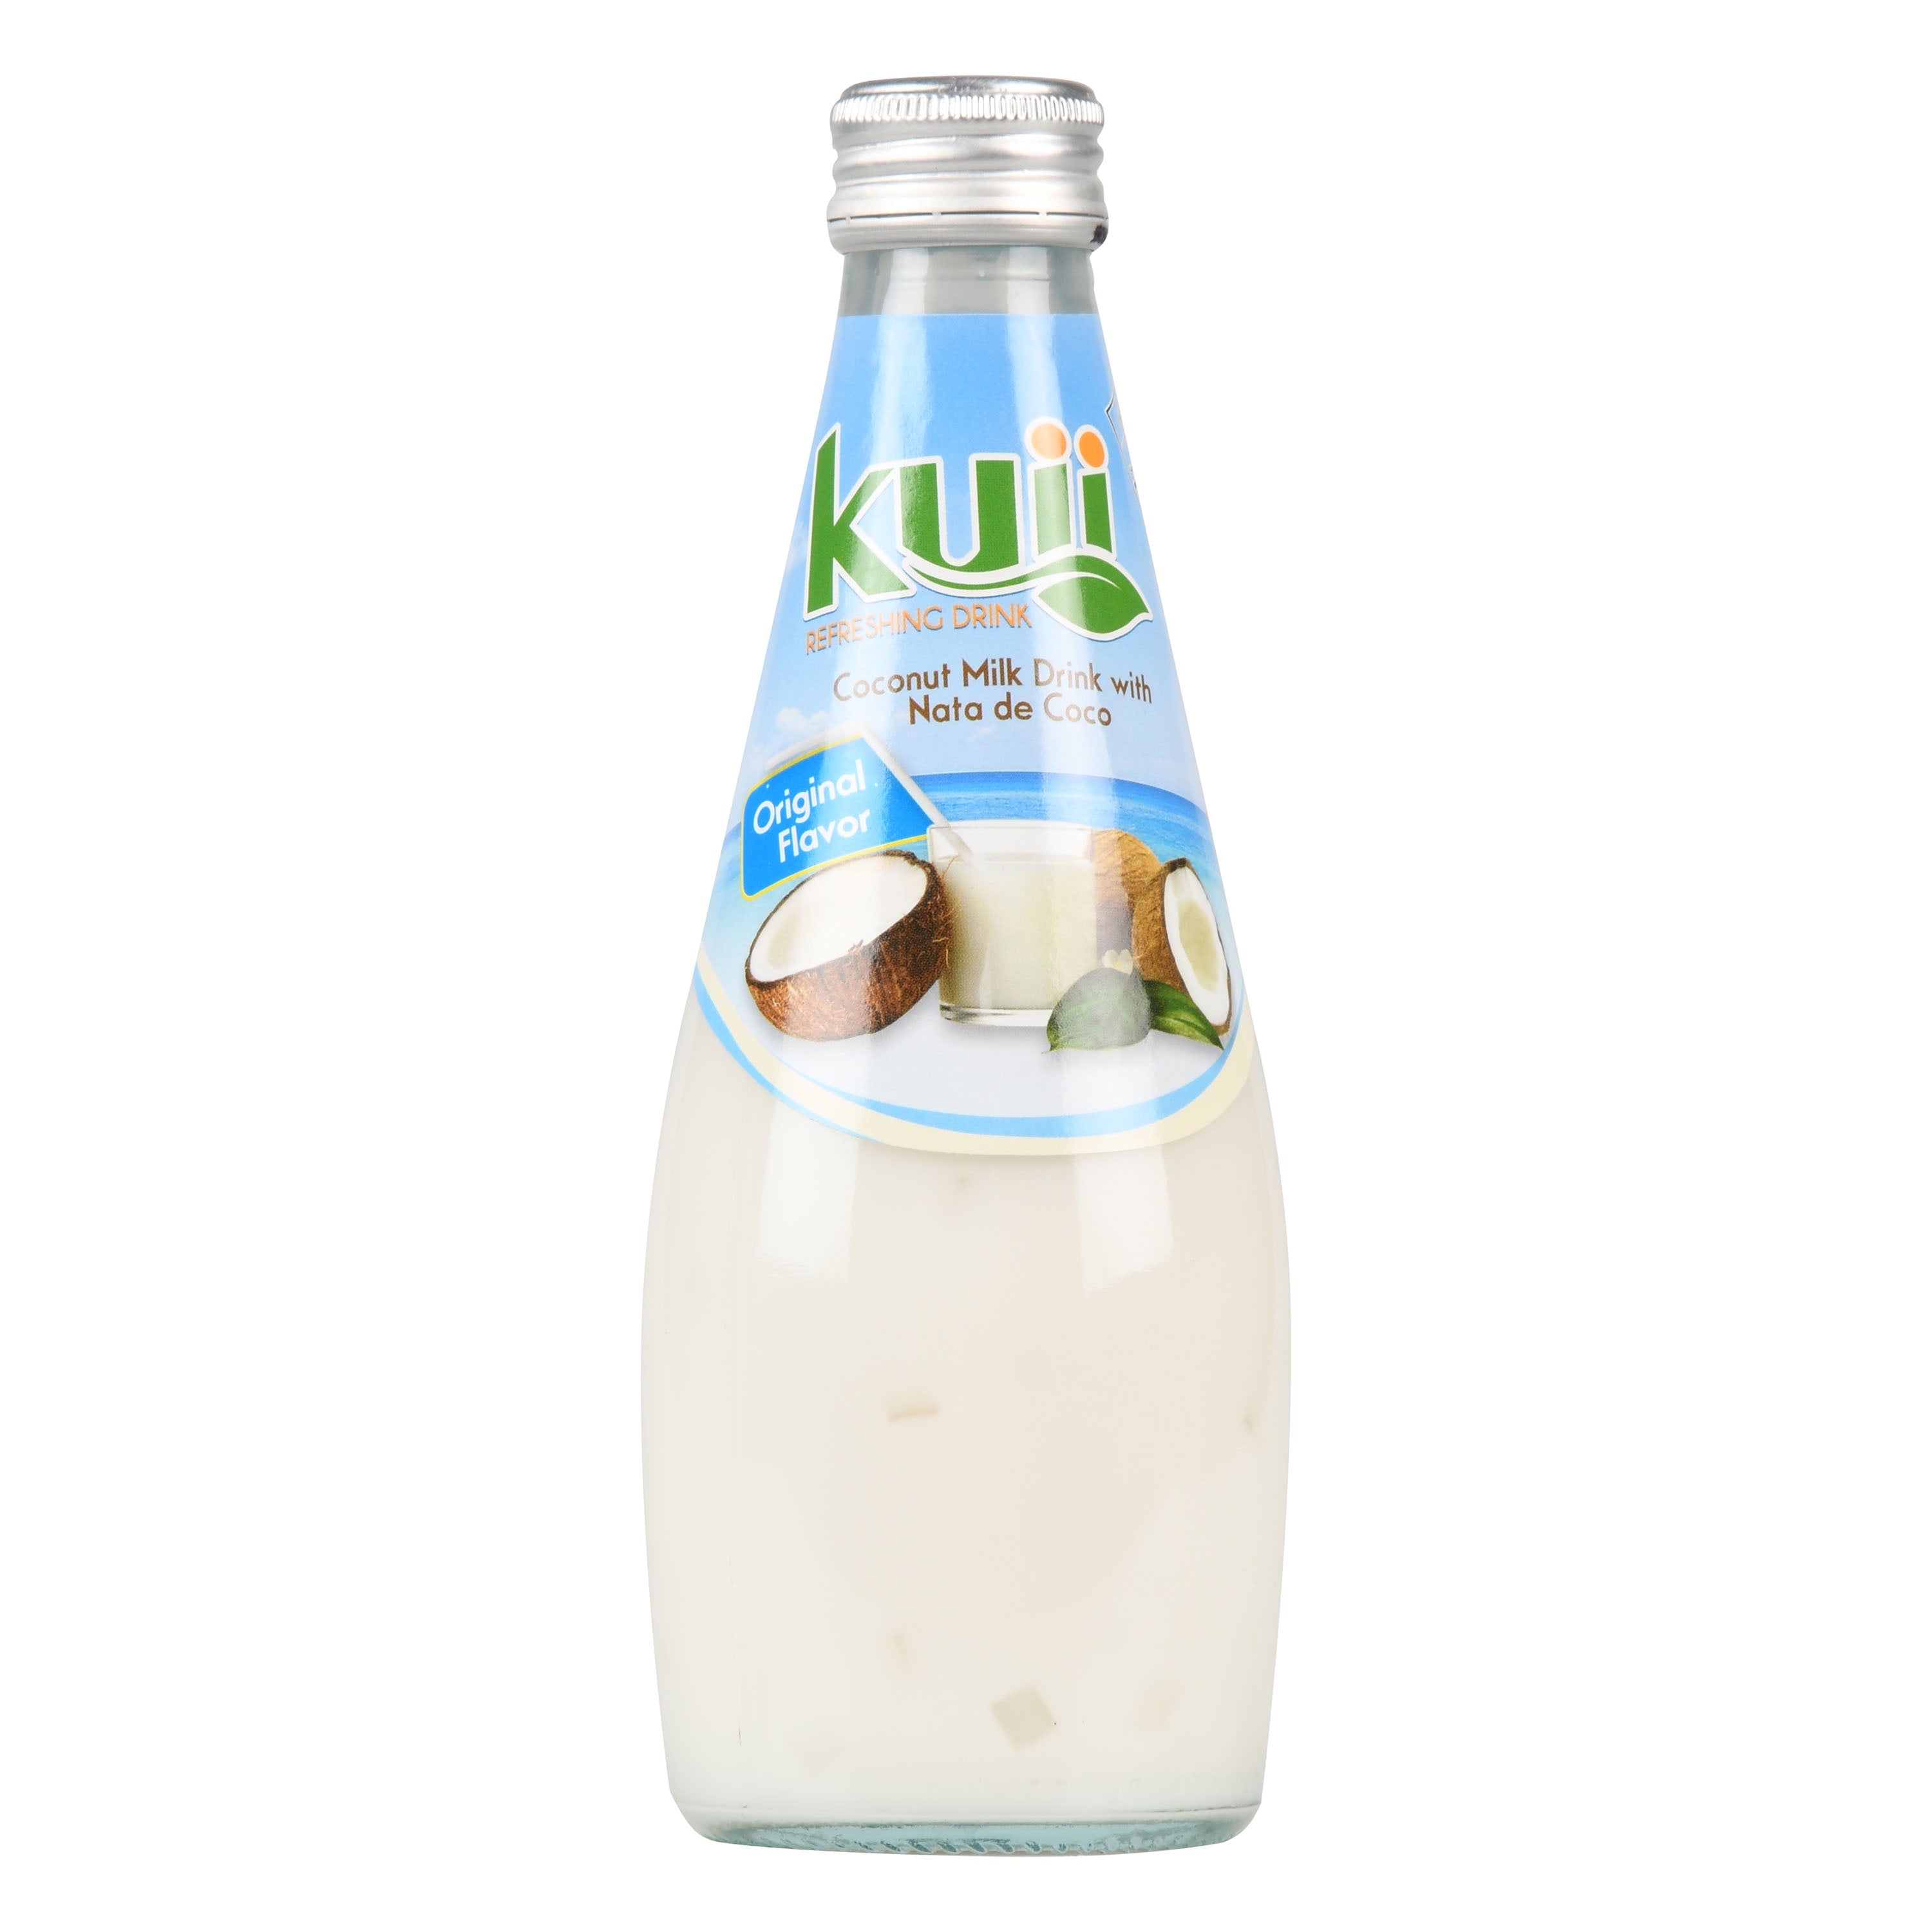 Kuii Coconut Milk Drinks